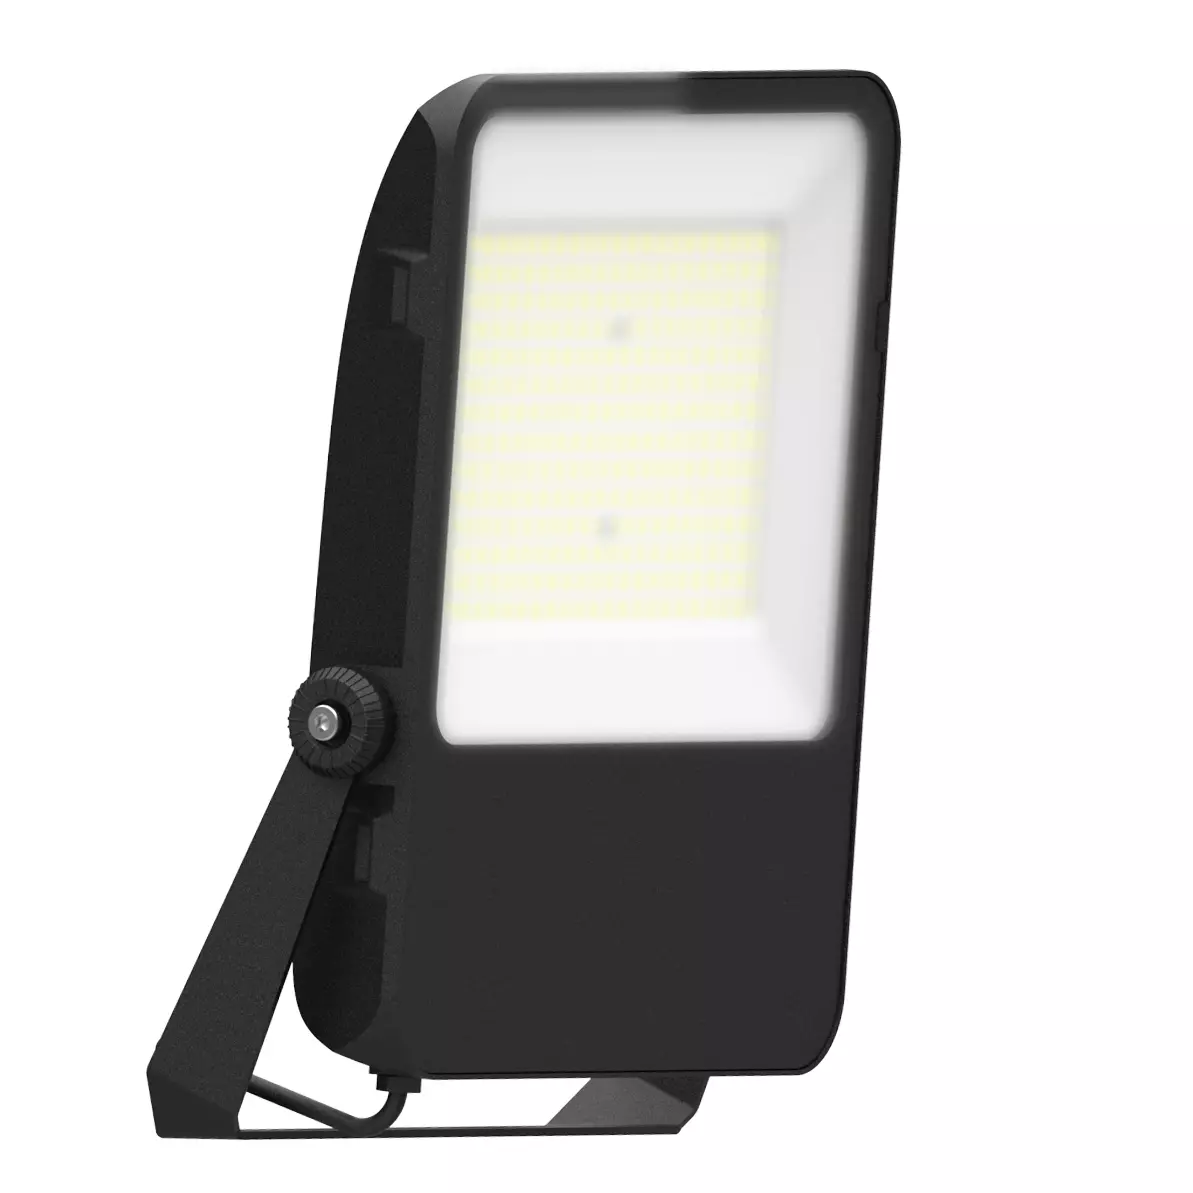 SCHRACK LITP0041 Capri LED Basic fényvető/reflektor 200W 24000lm 4000K IP65 fekete